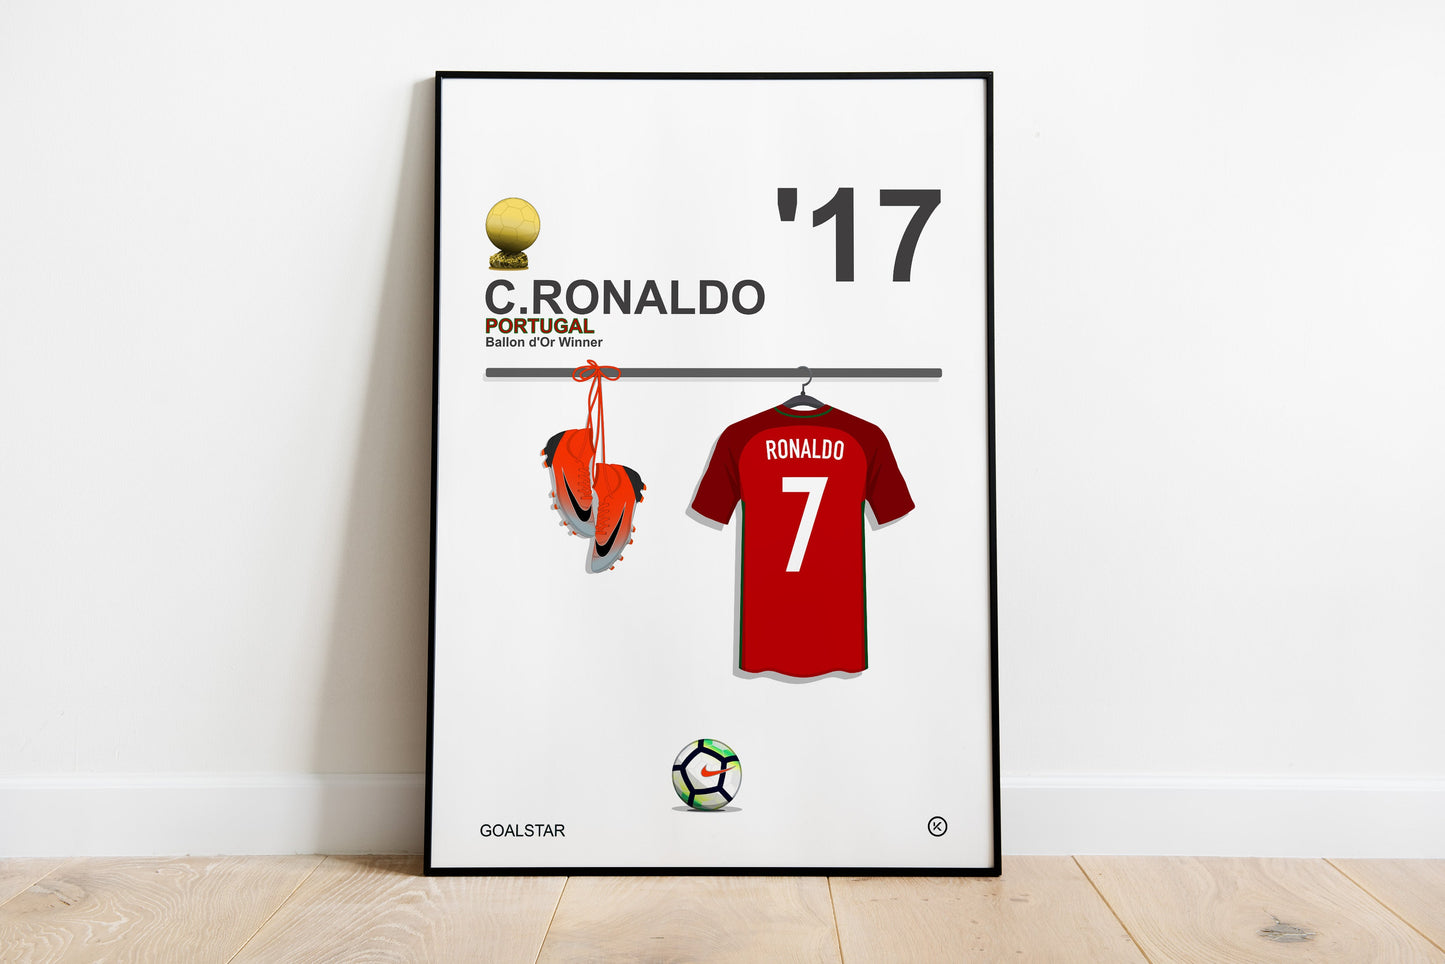 Cristiano Ronaldo - Ballon d'Or Winner 2017